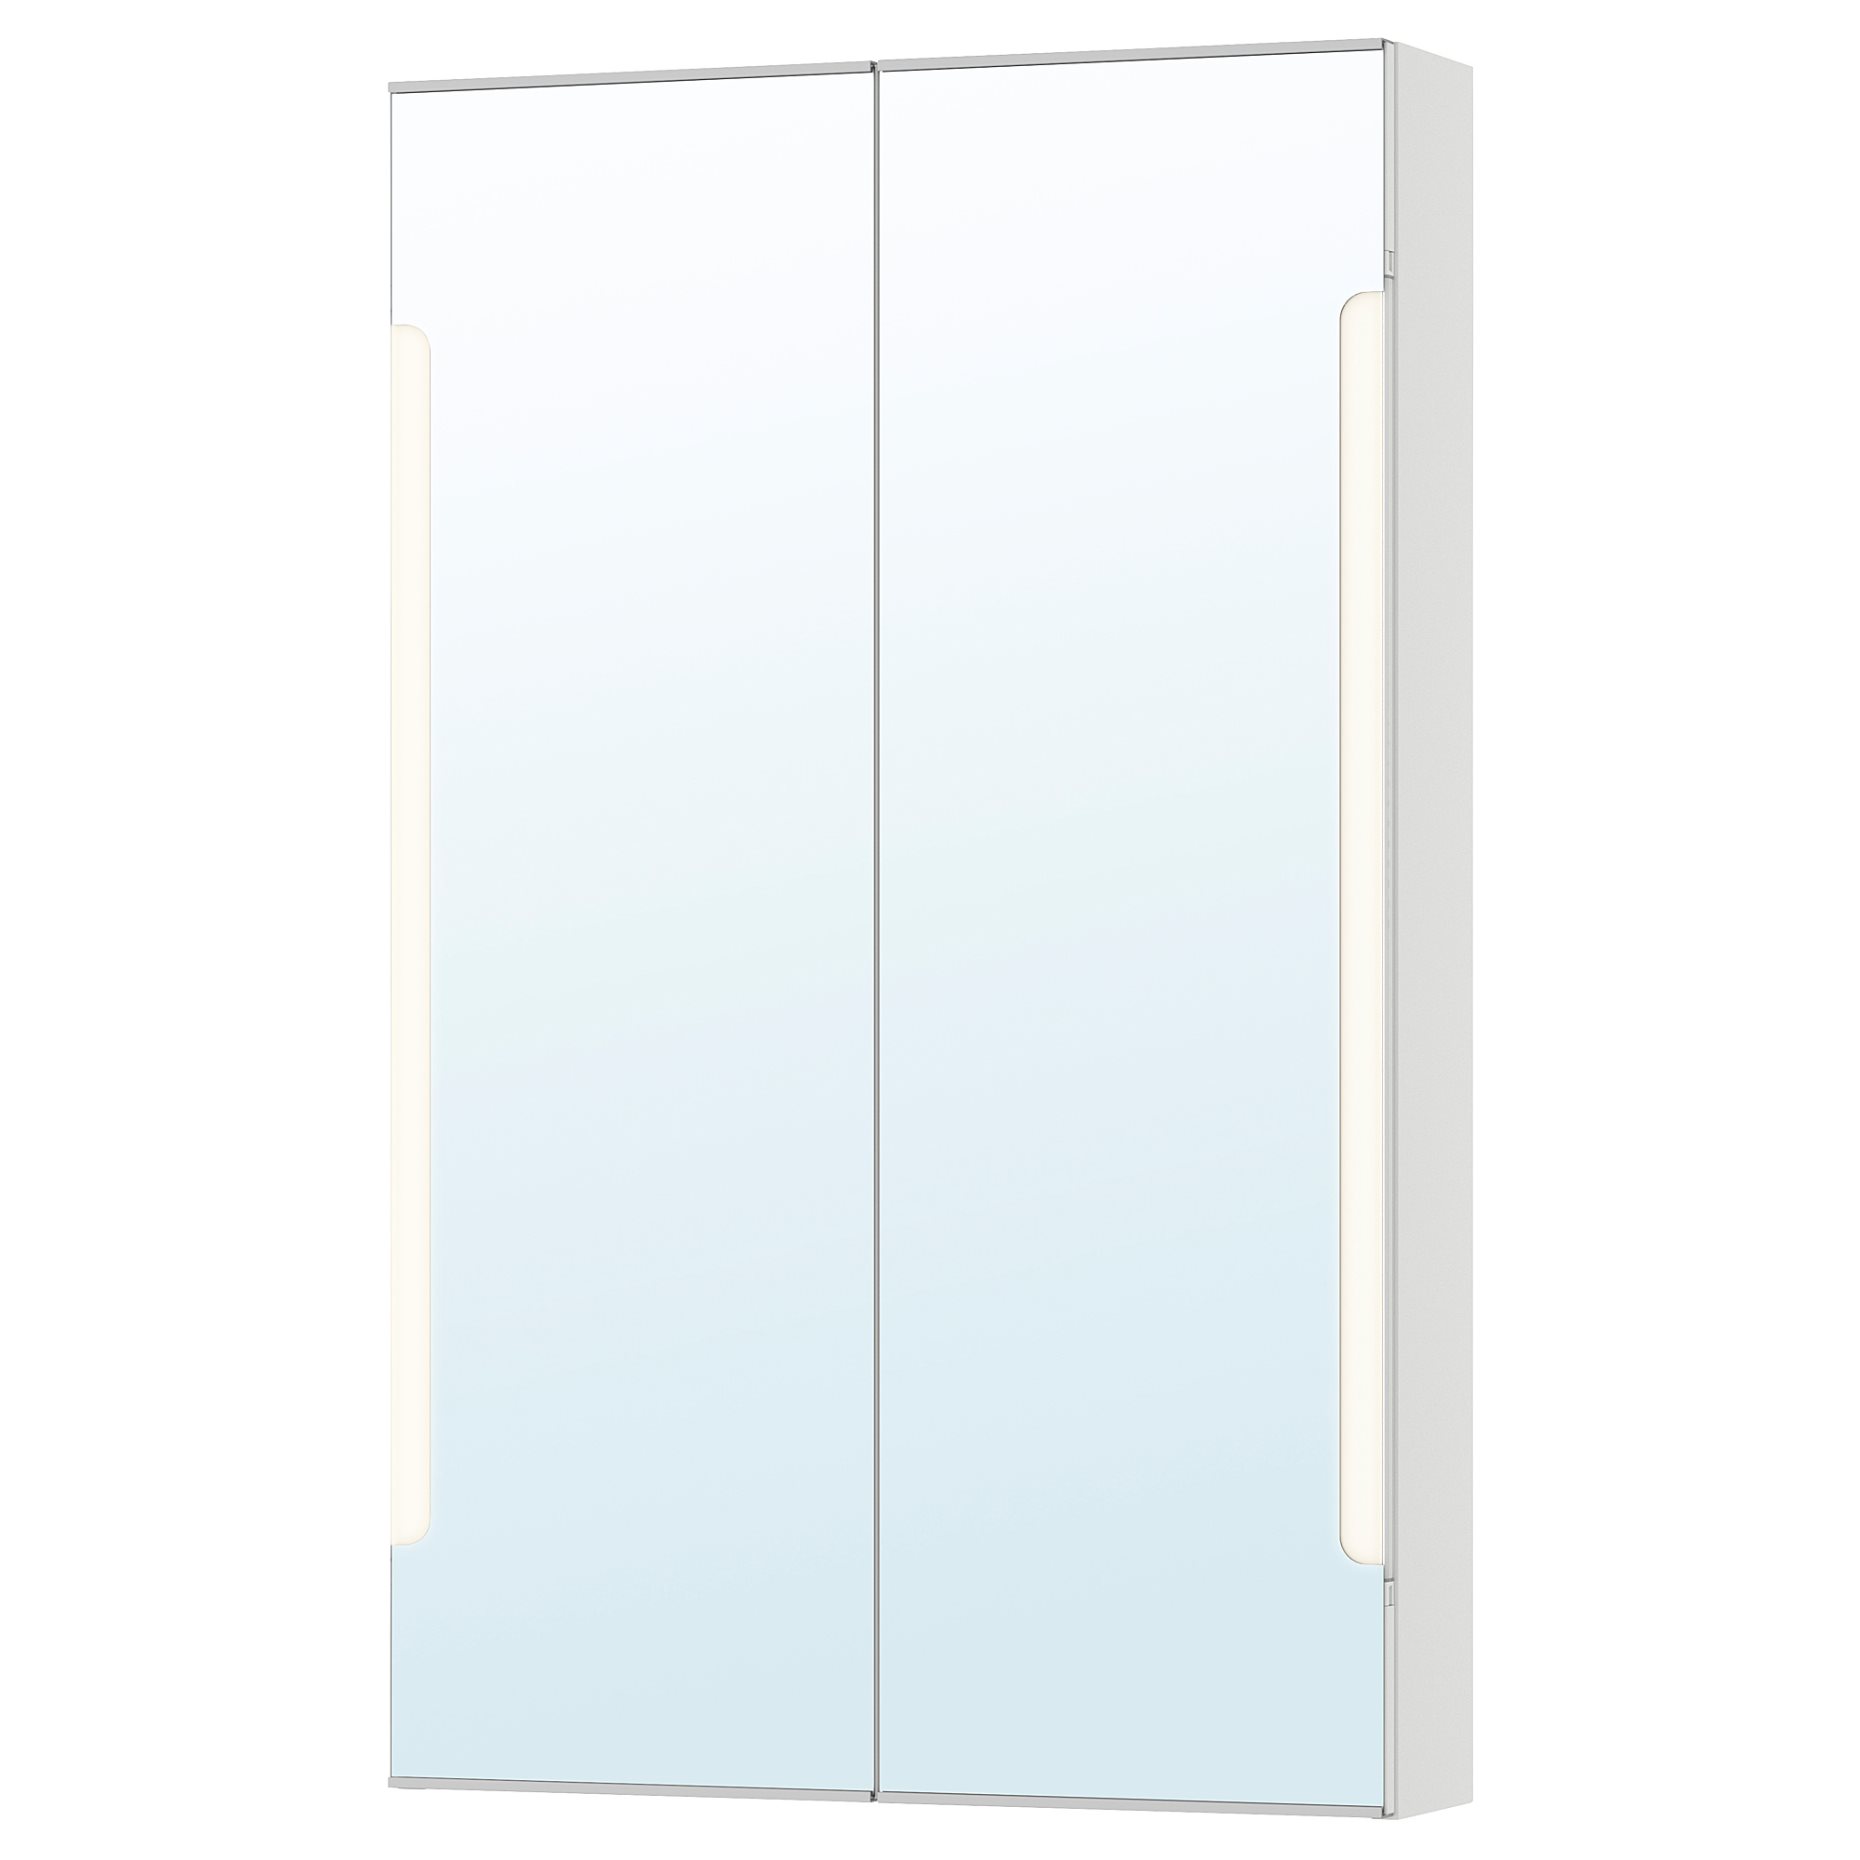 STORJORM, mirror cabinet 2 door/built-in lighting, 402.481.22